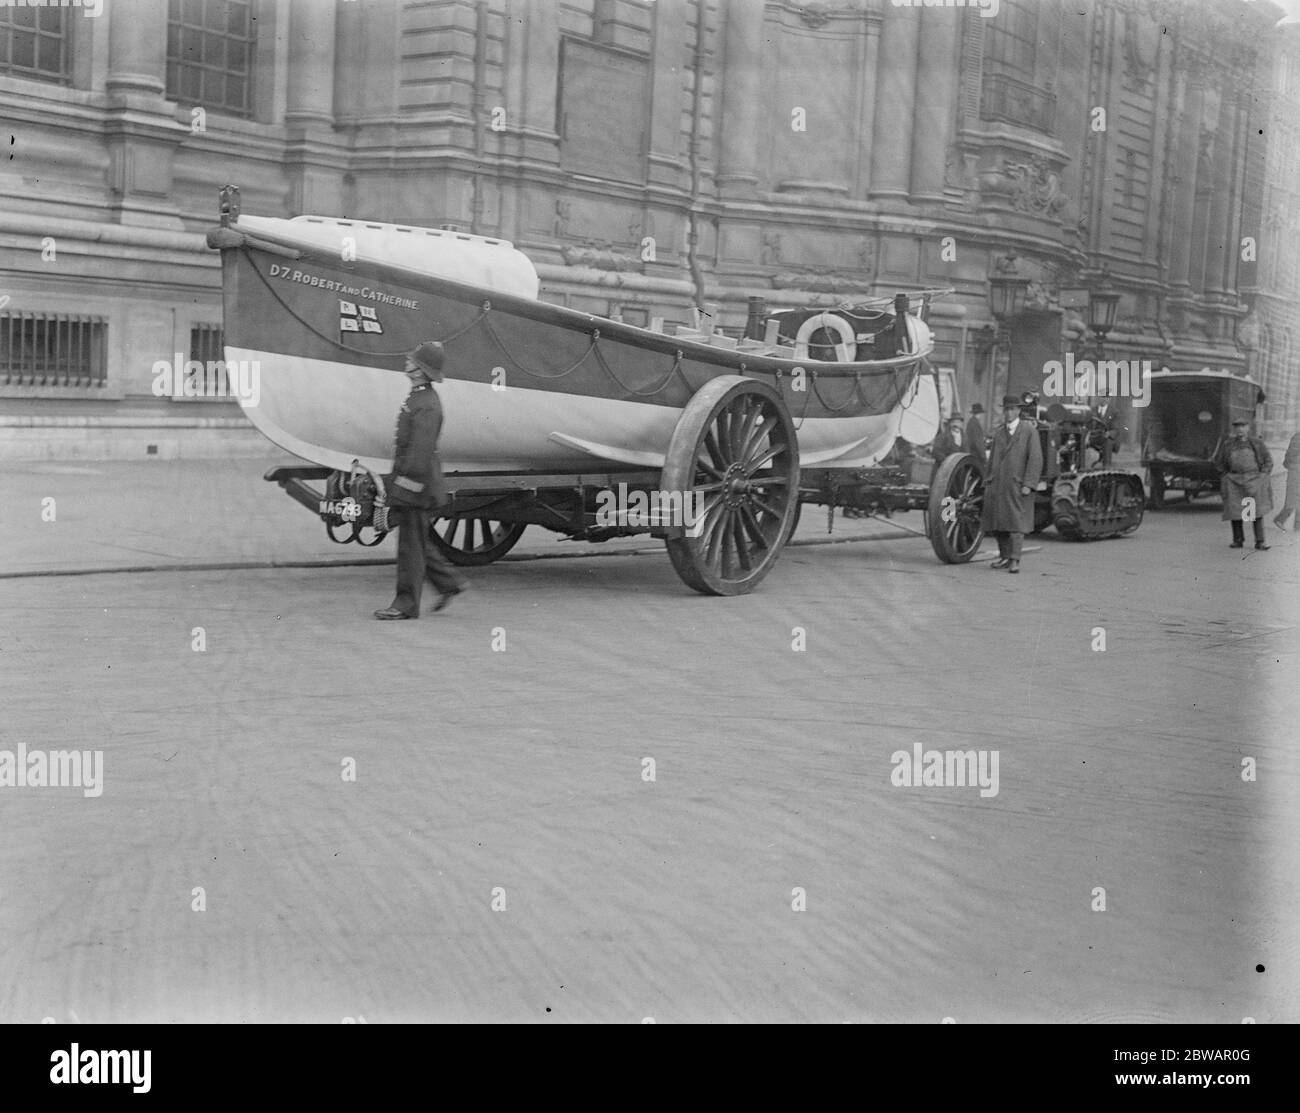 Le canot de sauvetage est amené à Londres pour l'inspection de son Altesse Royale D 7 Robert & Catherine, bateau de sauvetage 28 avril 1921 Banque D'Images